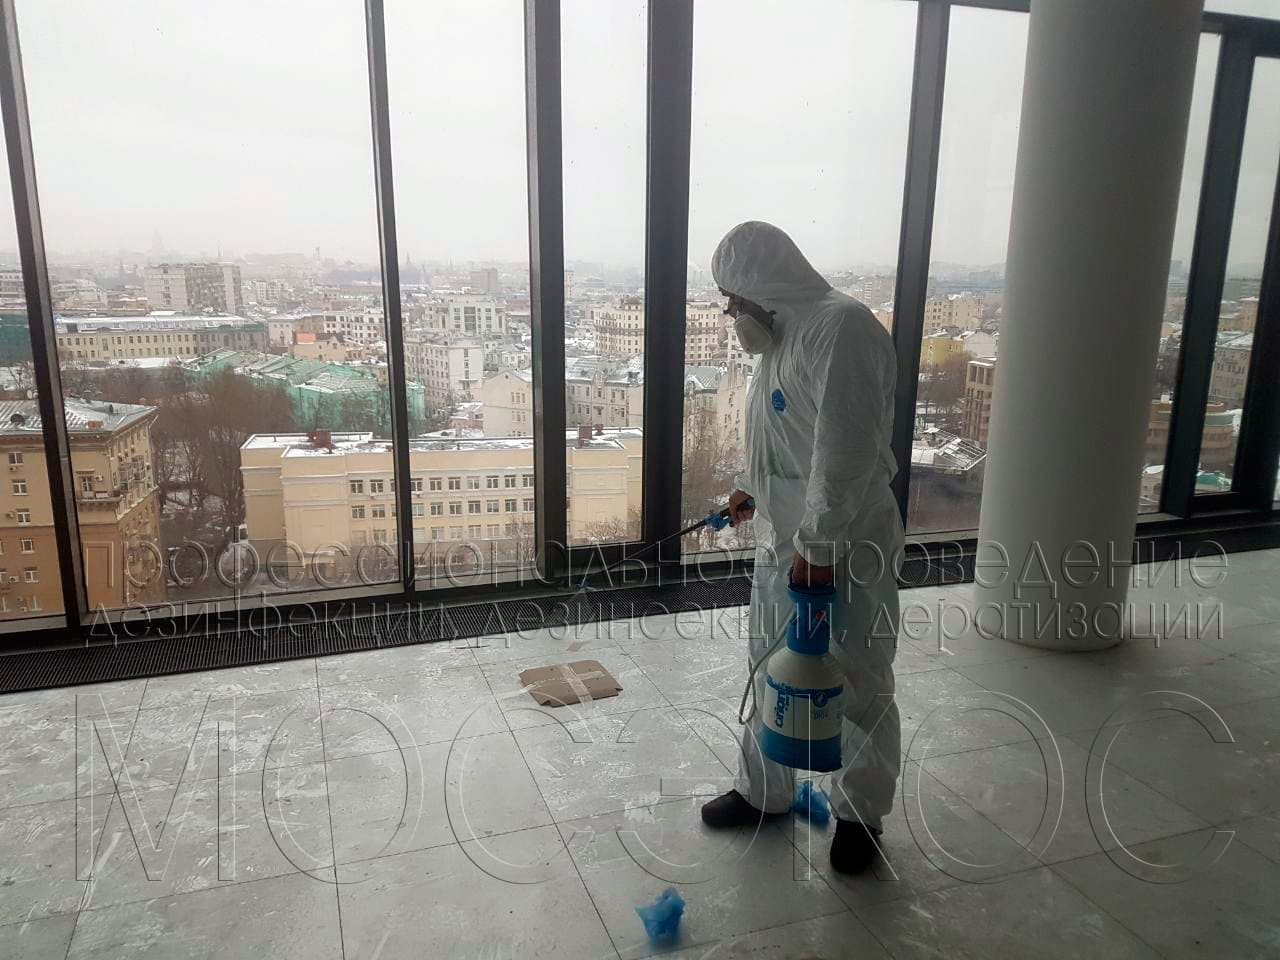 Пест-контроль (Pest Control) в Санкт-Петербурге